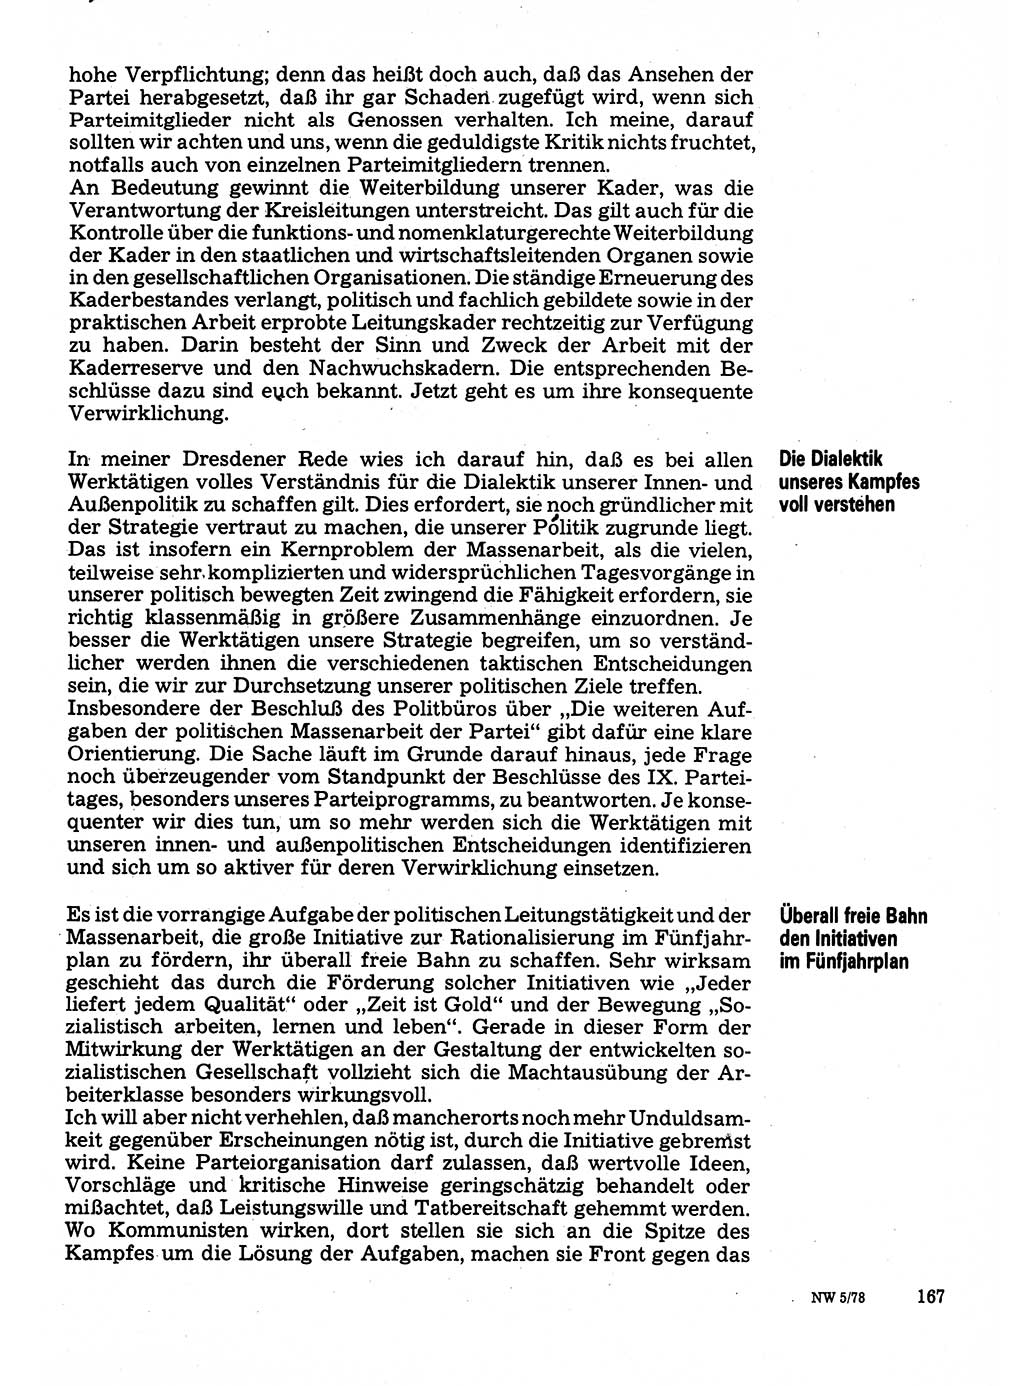 Neuer Weg (NW), Organ des Zentralkomitees (ZK) der SED (Sozialistische Einheitspartei Deutschlands) für Fragen des Parteilebens, 33. Jahrgang [Deutsche Demokratische Republik (DDR)] 1978, Seite 167 (NW ZK SED DDR 1978, S. 167)